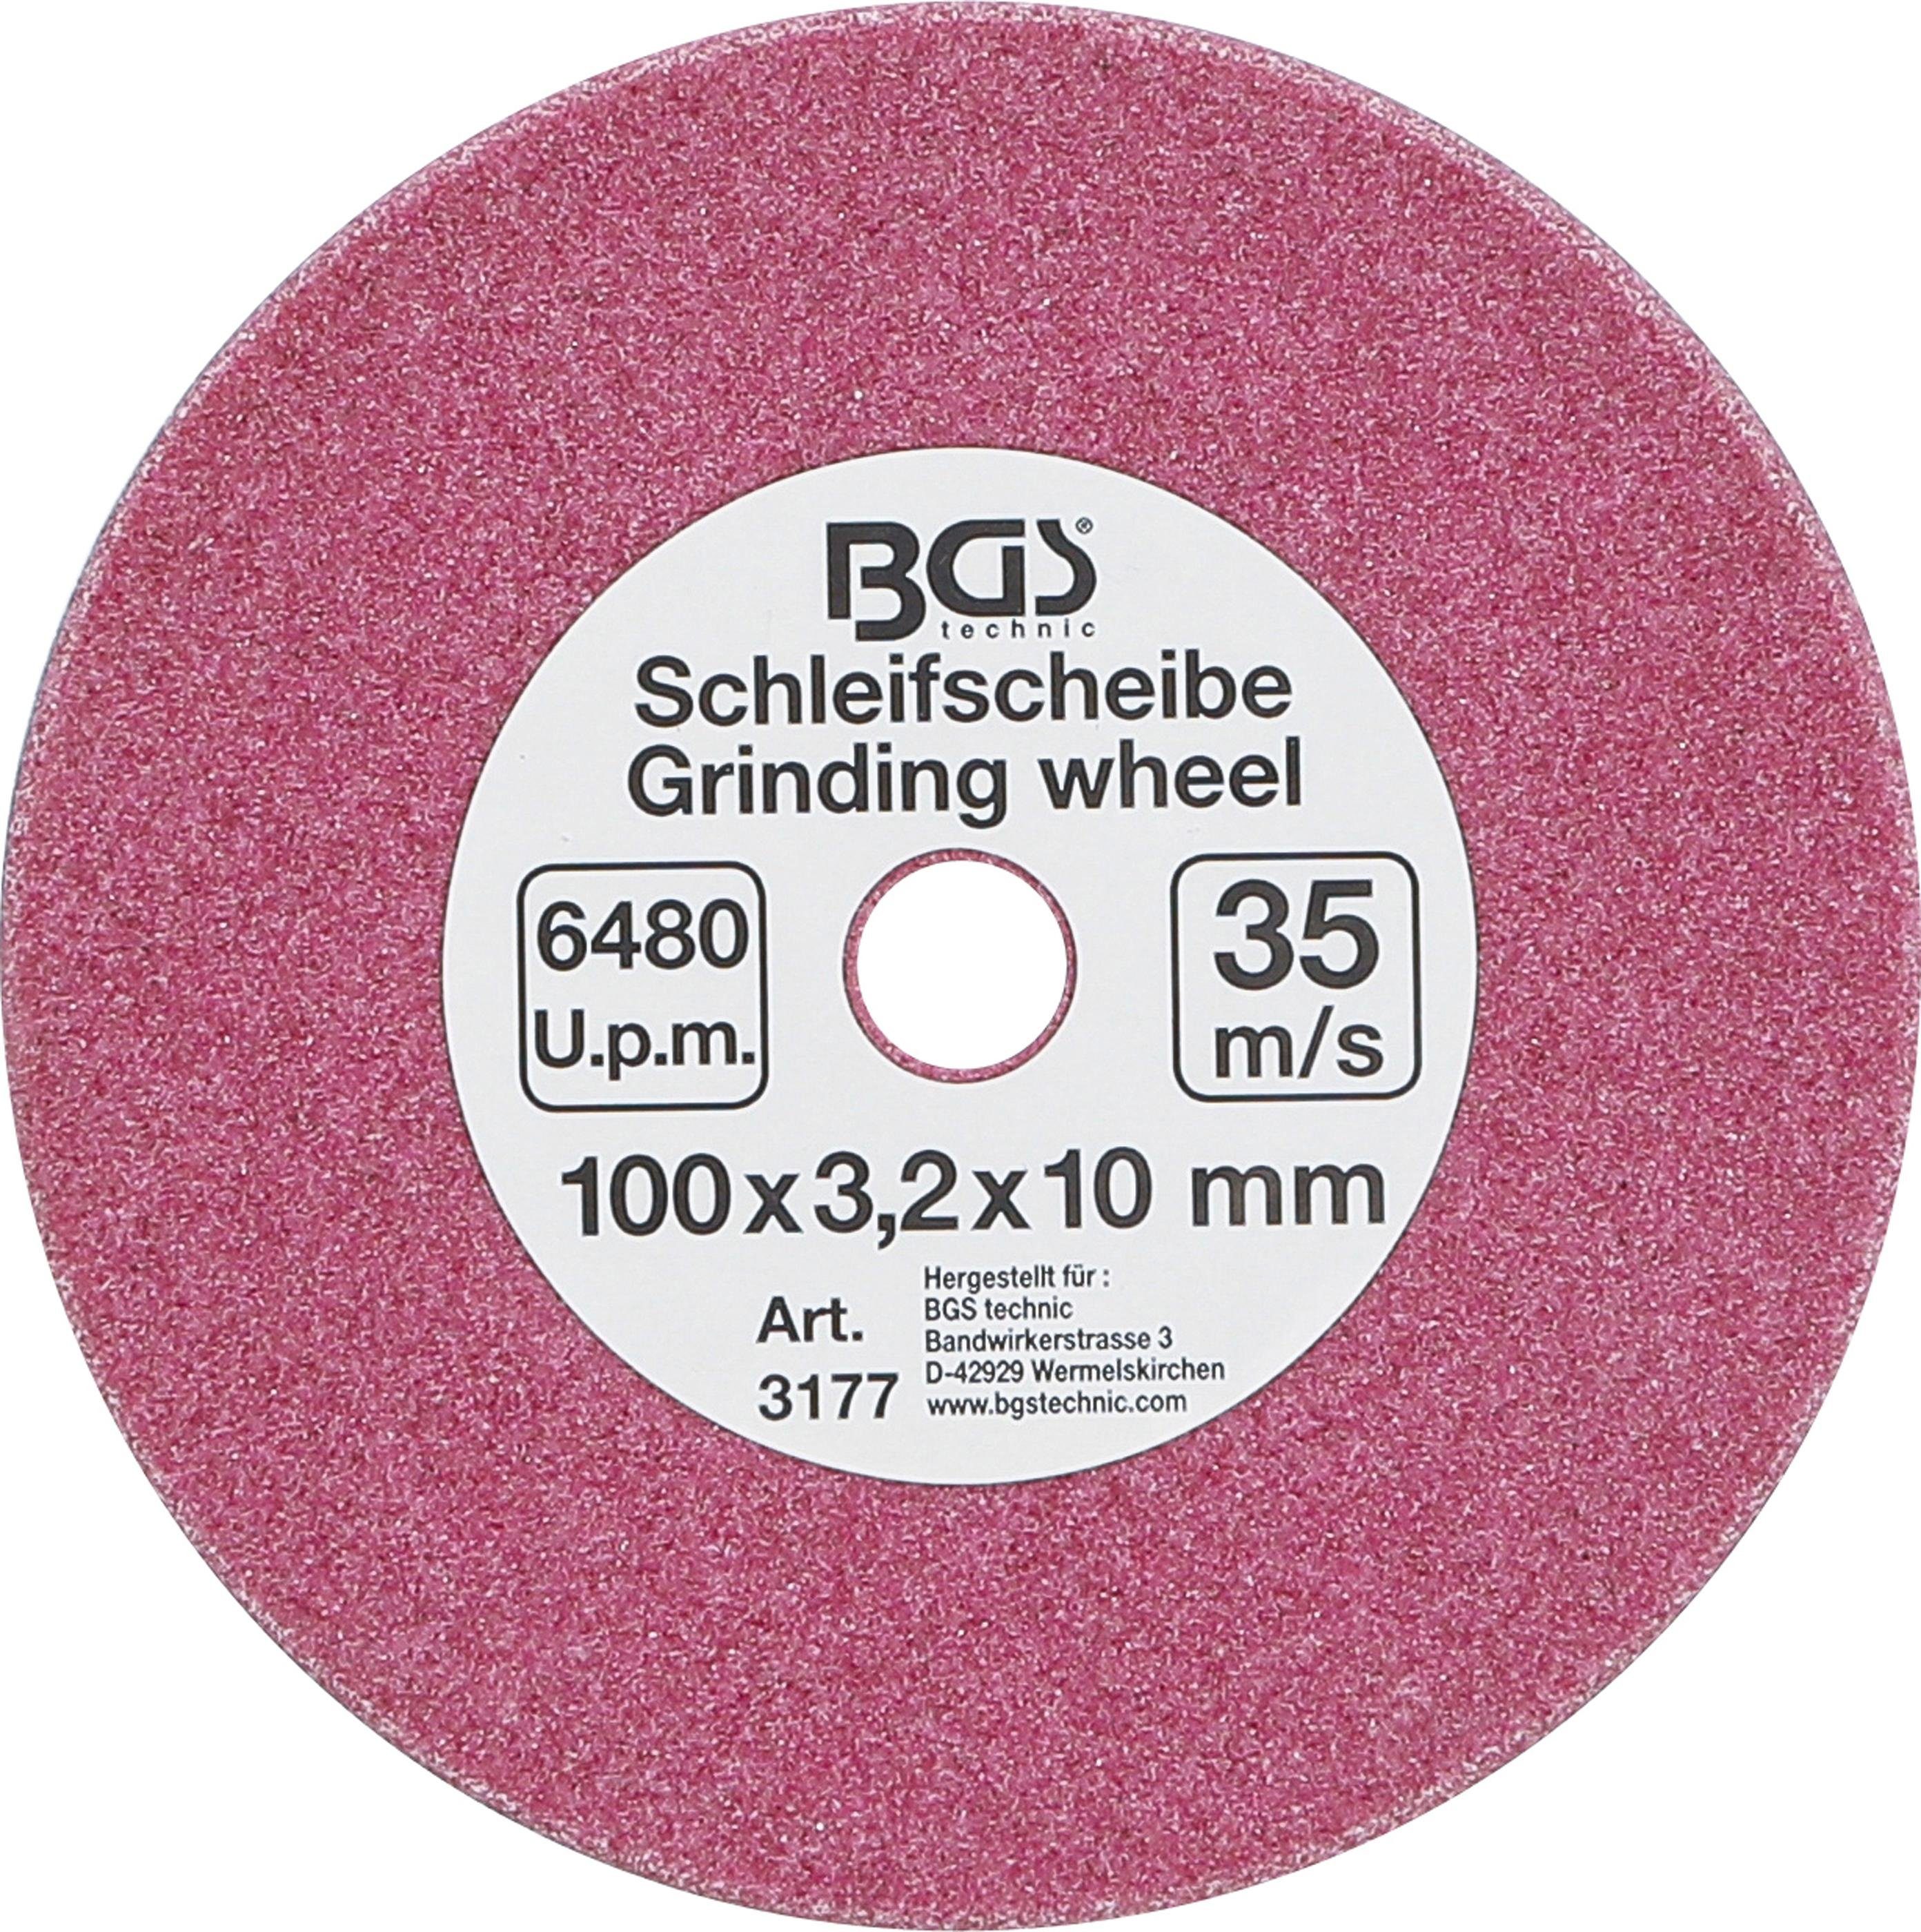 BGS technic Schleifscheibe Schleifscheibe, für Art. 3180, Ø 100 x 3,2 x 10 mm